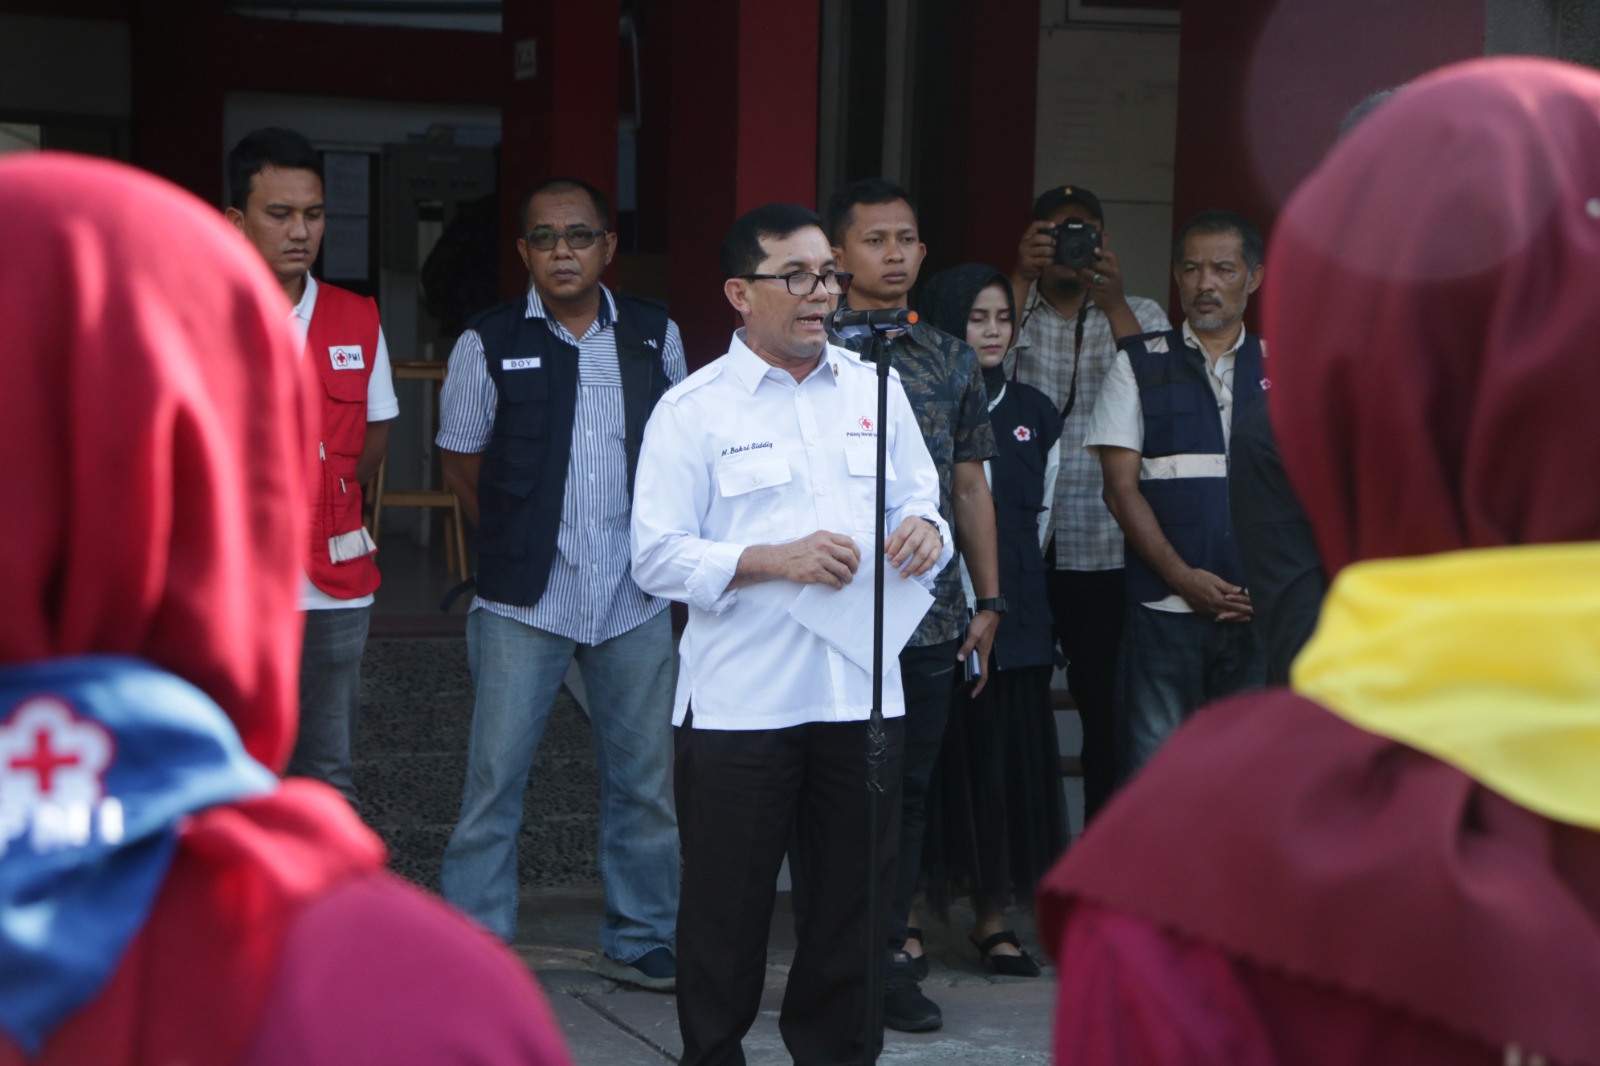 Peserta Jumbara PMR PMI Banda Aceh dilepas menuju Tamiang